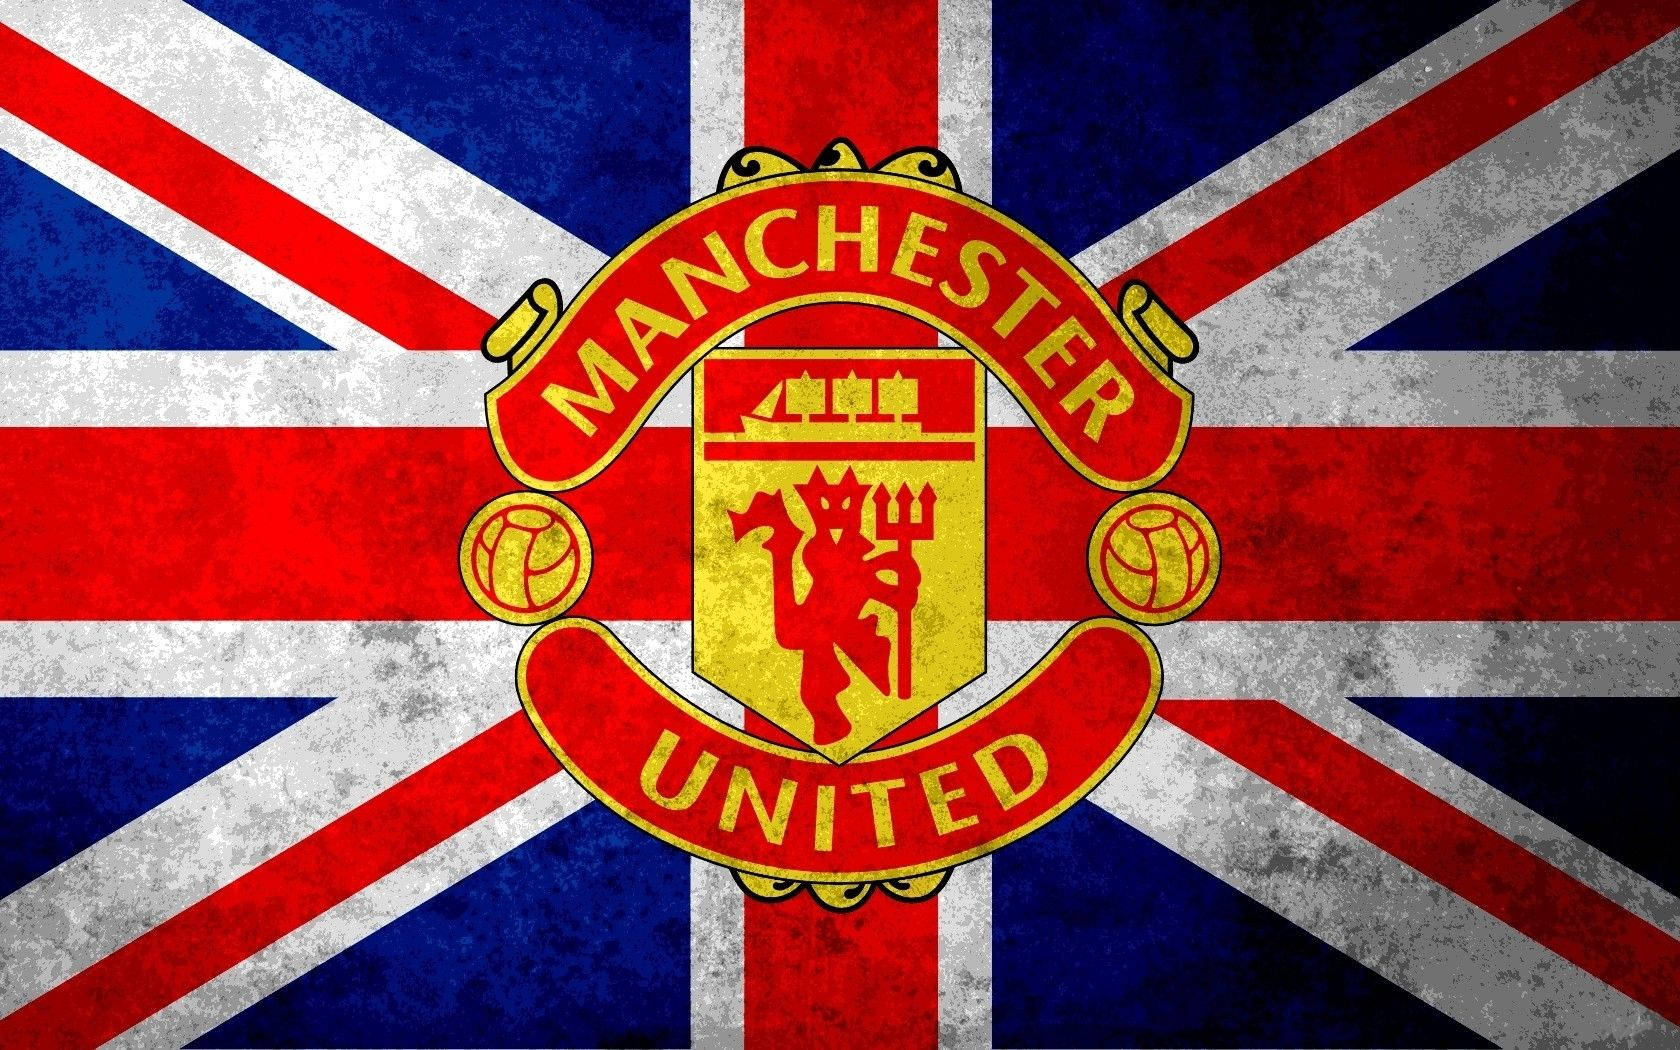 Logotipodel Manchester United Con La Bandera Británica Fondo de pantalla